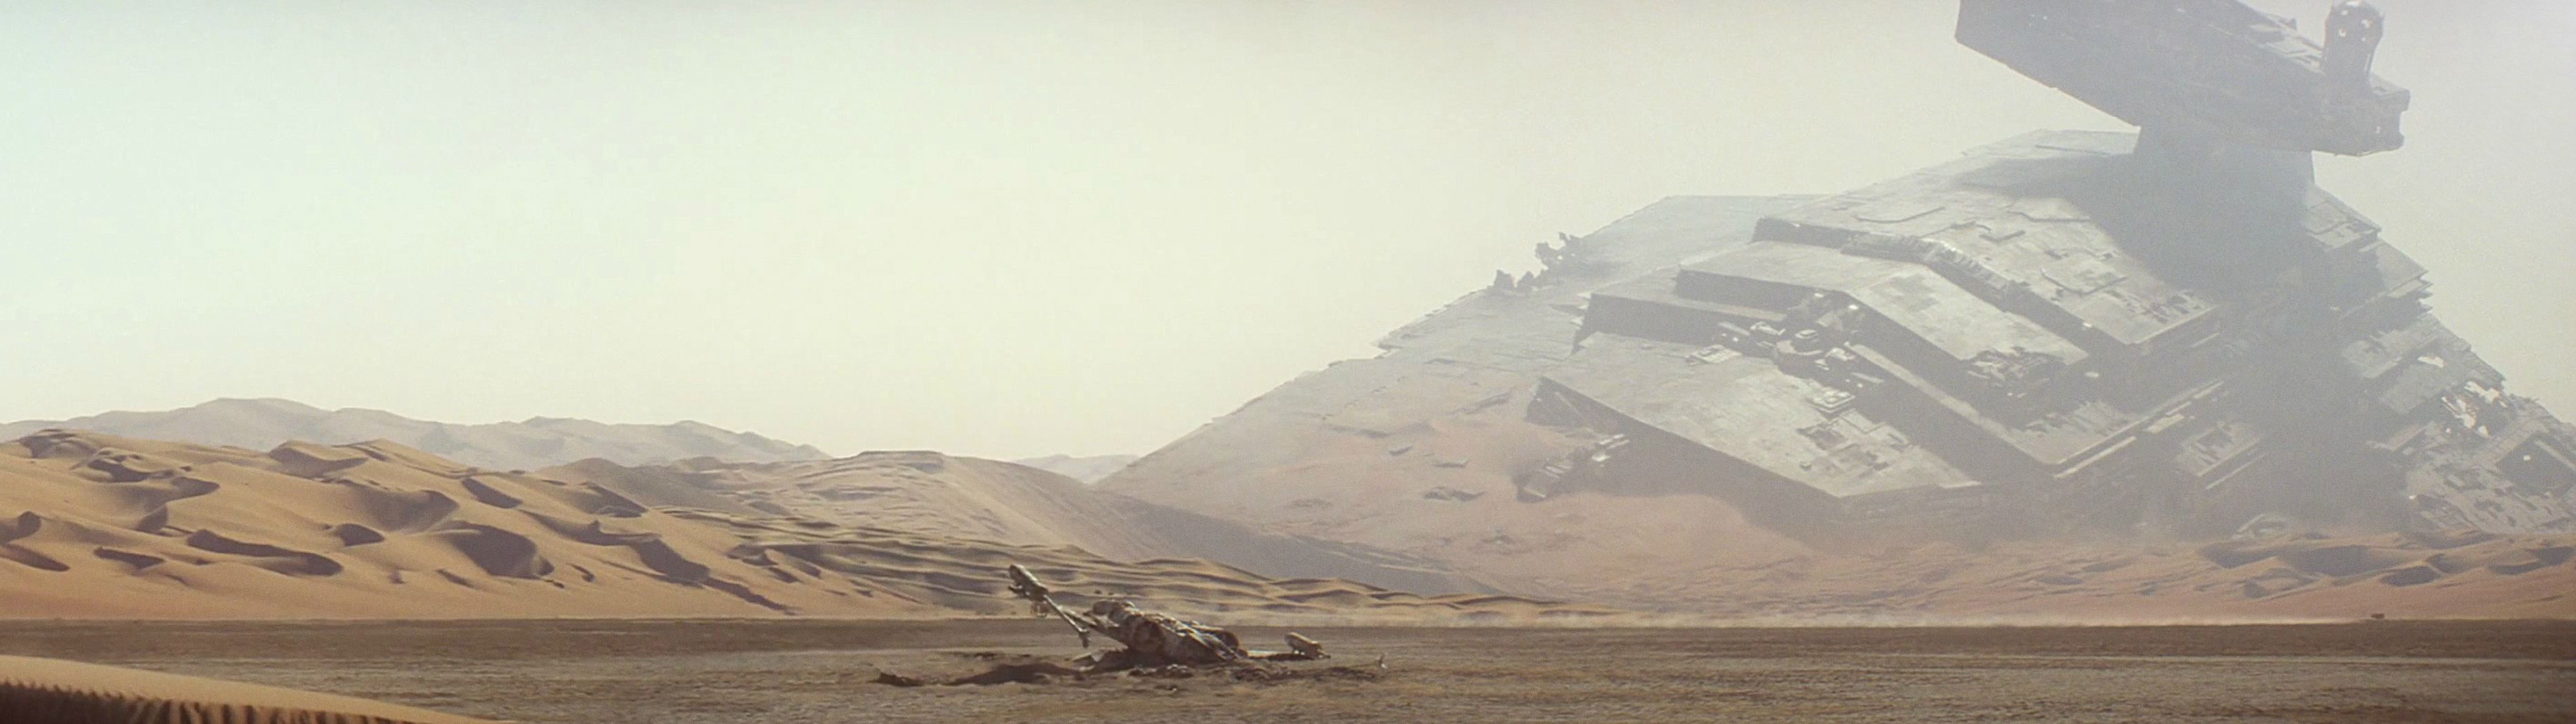 Tatooine Wallpaper. Tatooine